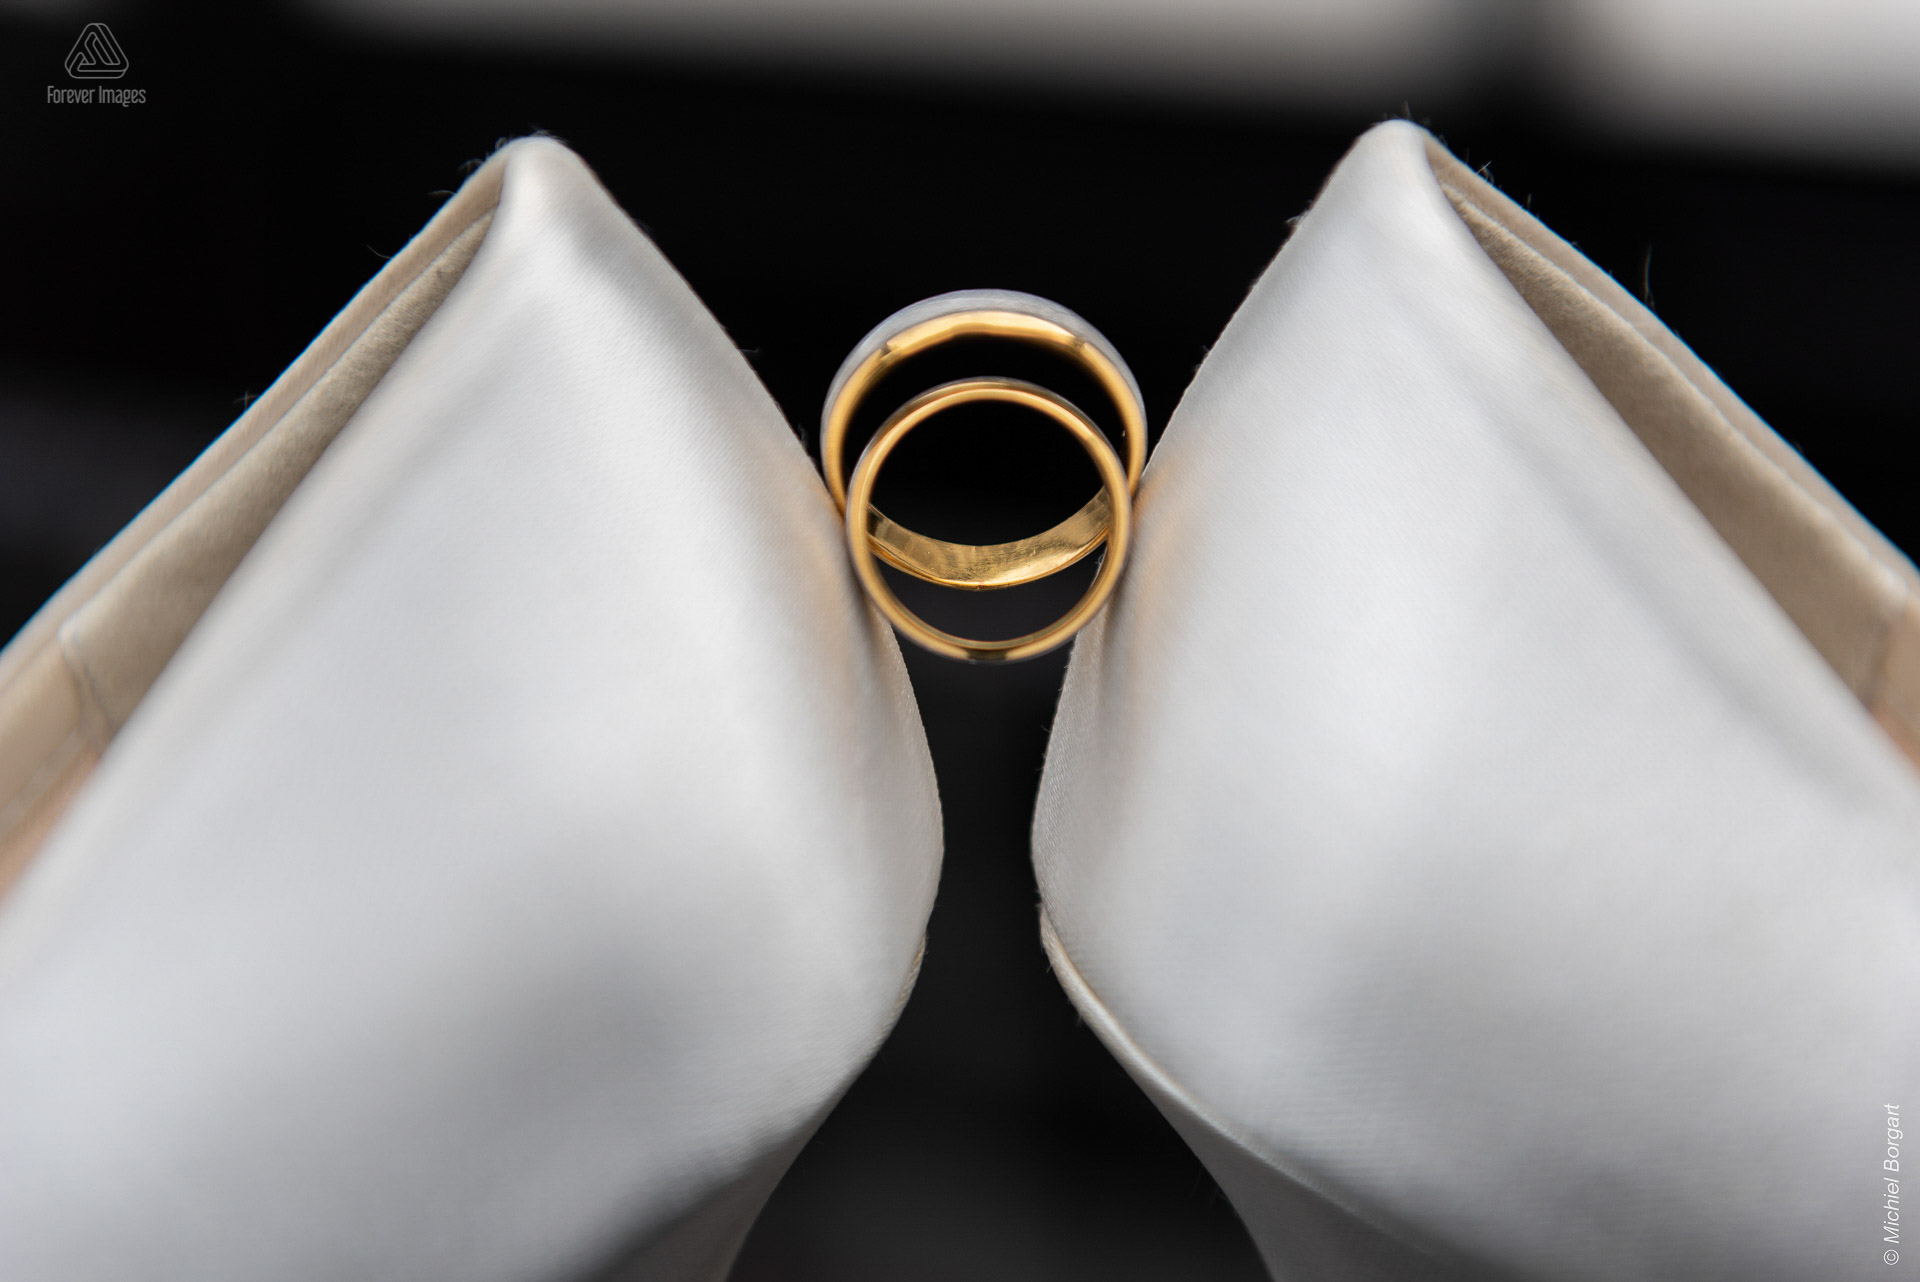 Detailfoto bruidsfoto trouwfoto bruidsschoenen ringen achter elkaar | Bruidsfotograaf Michiel Borgart - Forever Images.